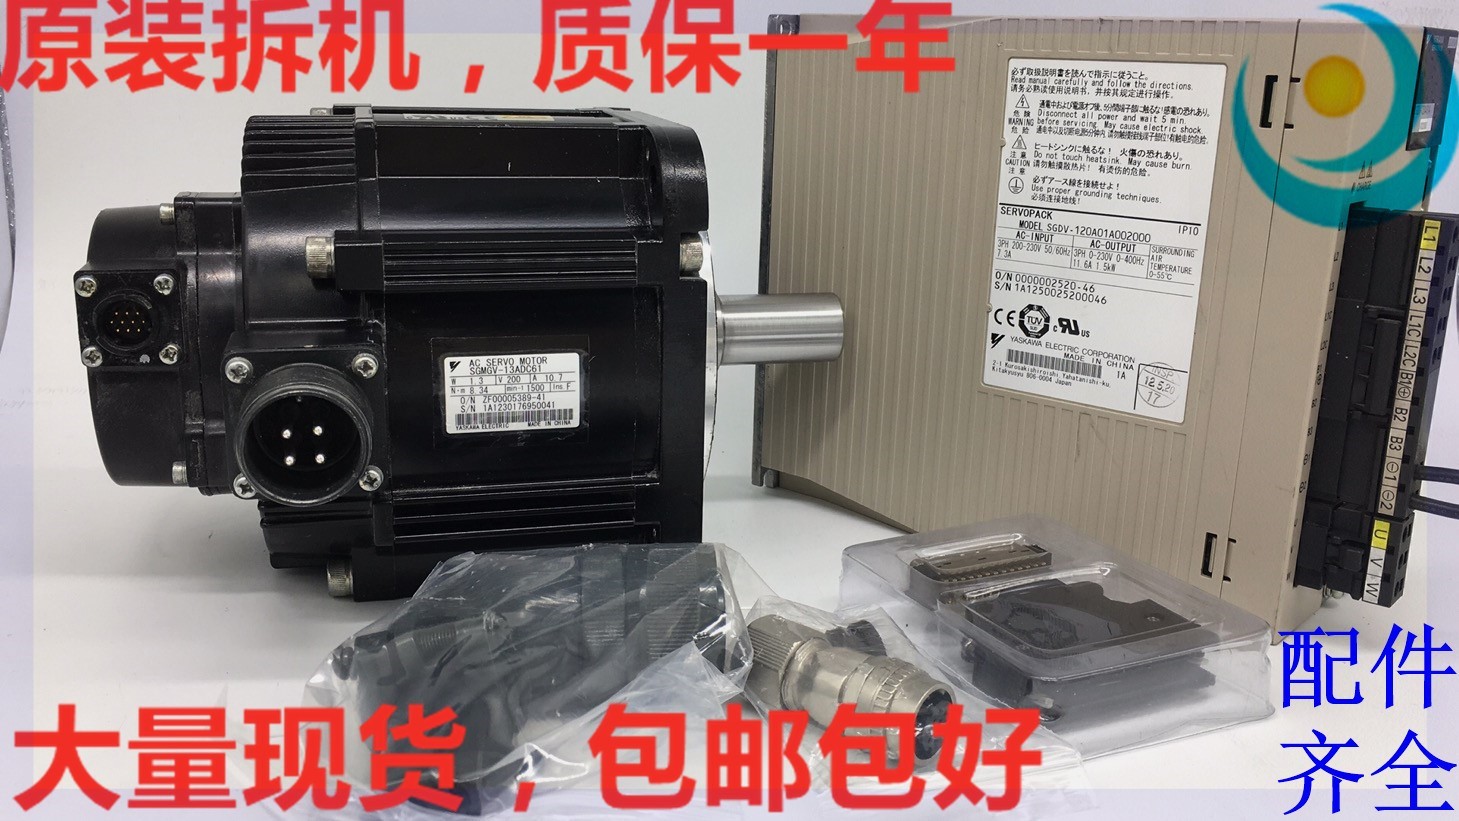 至高 新品 YASKAWA 安川電機 サーボモータ SGMGV-13A3C6C